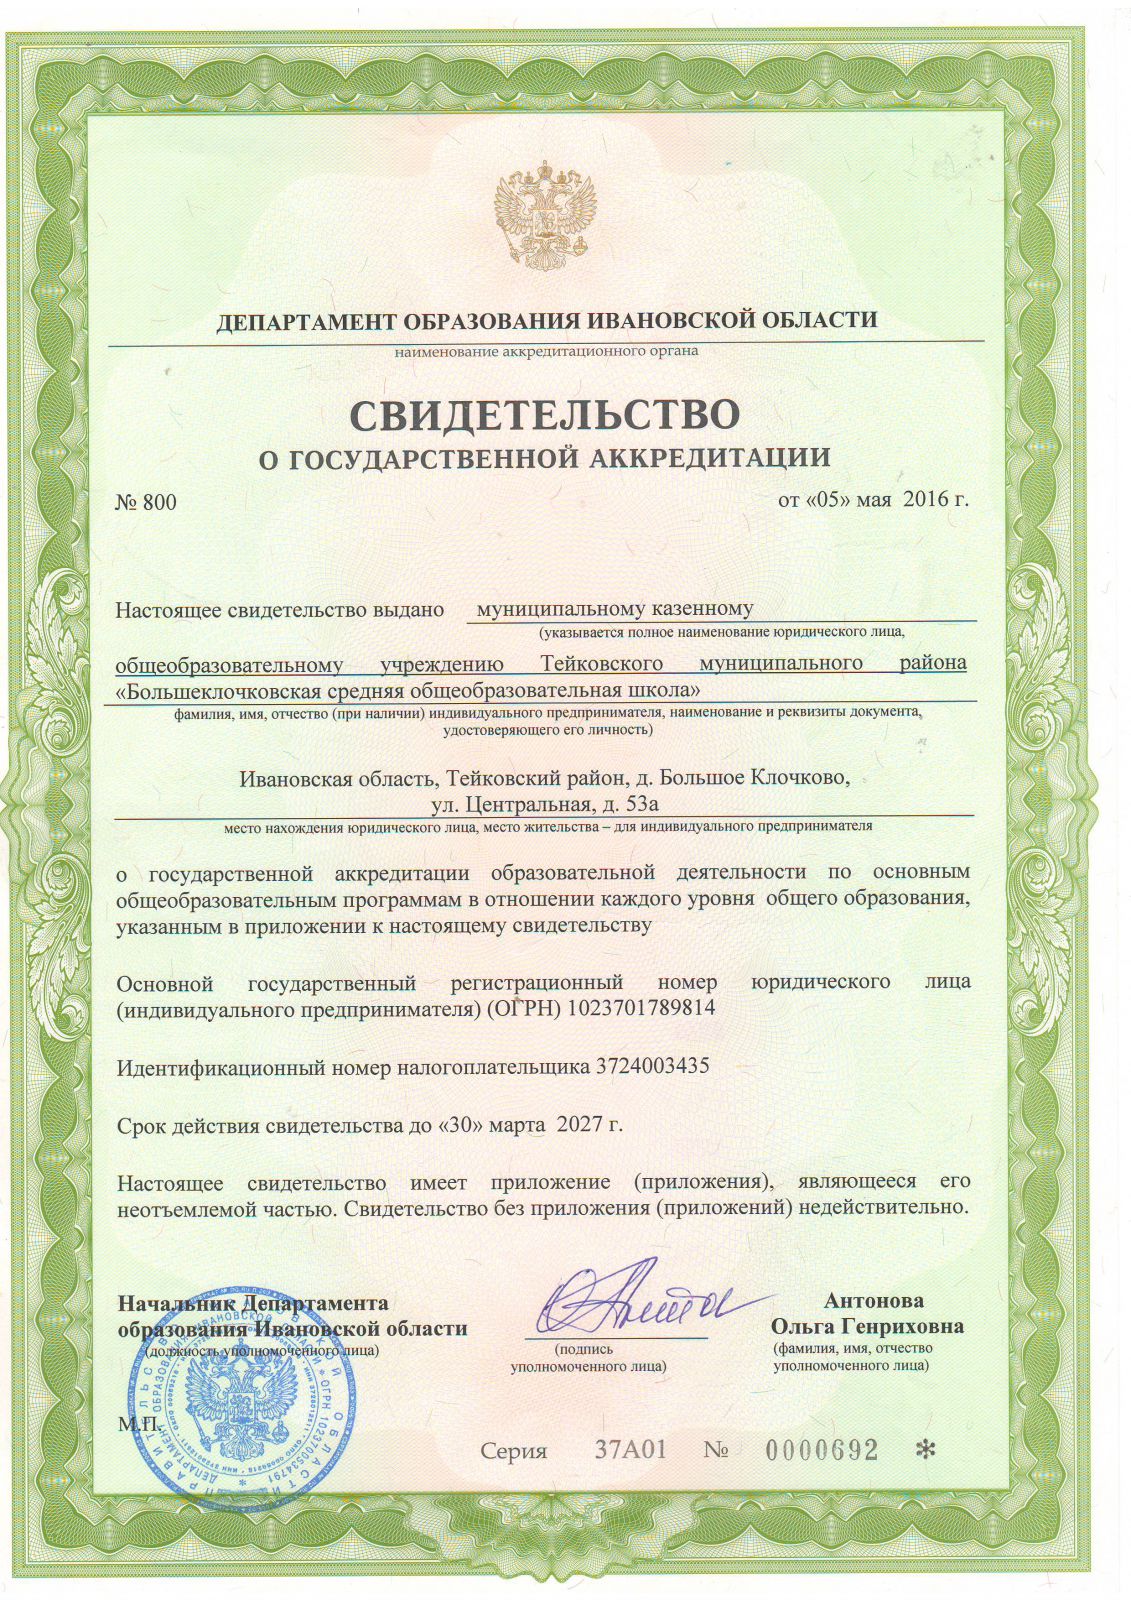 Свидетельство о государственной аккредитации № 551 от 30.03.2015